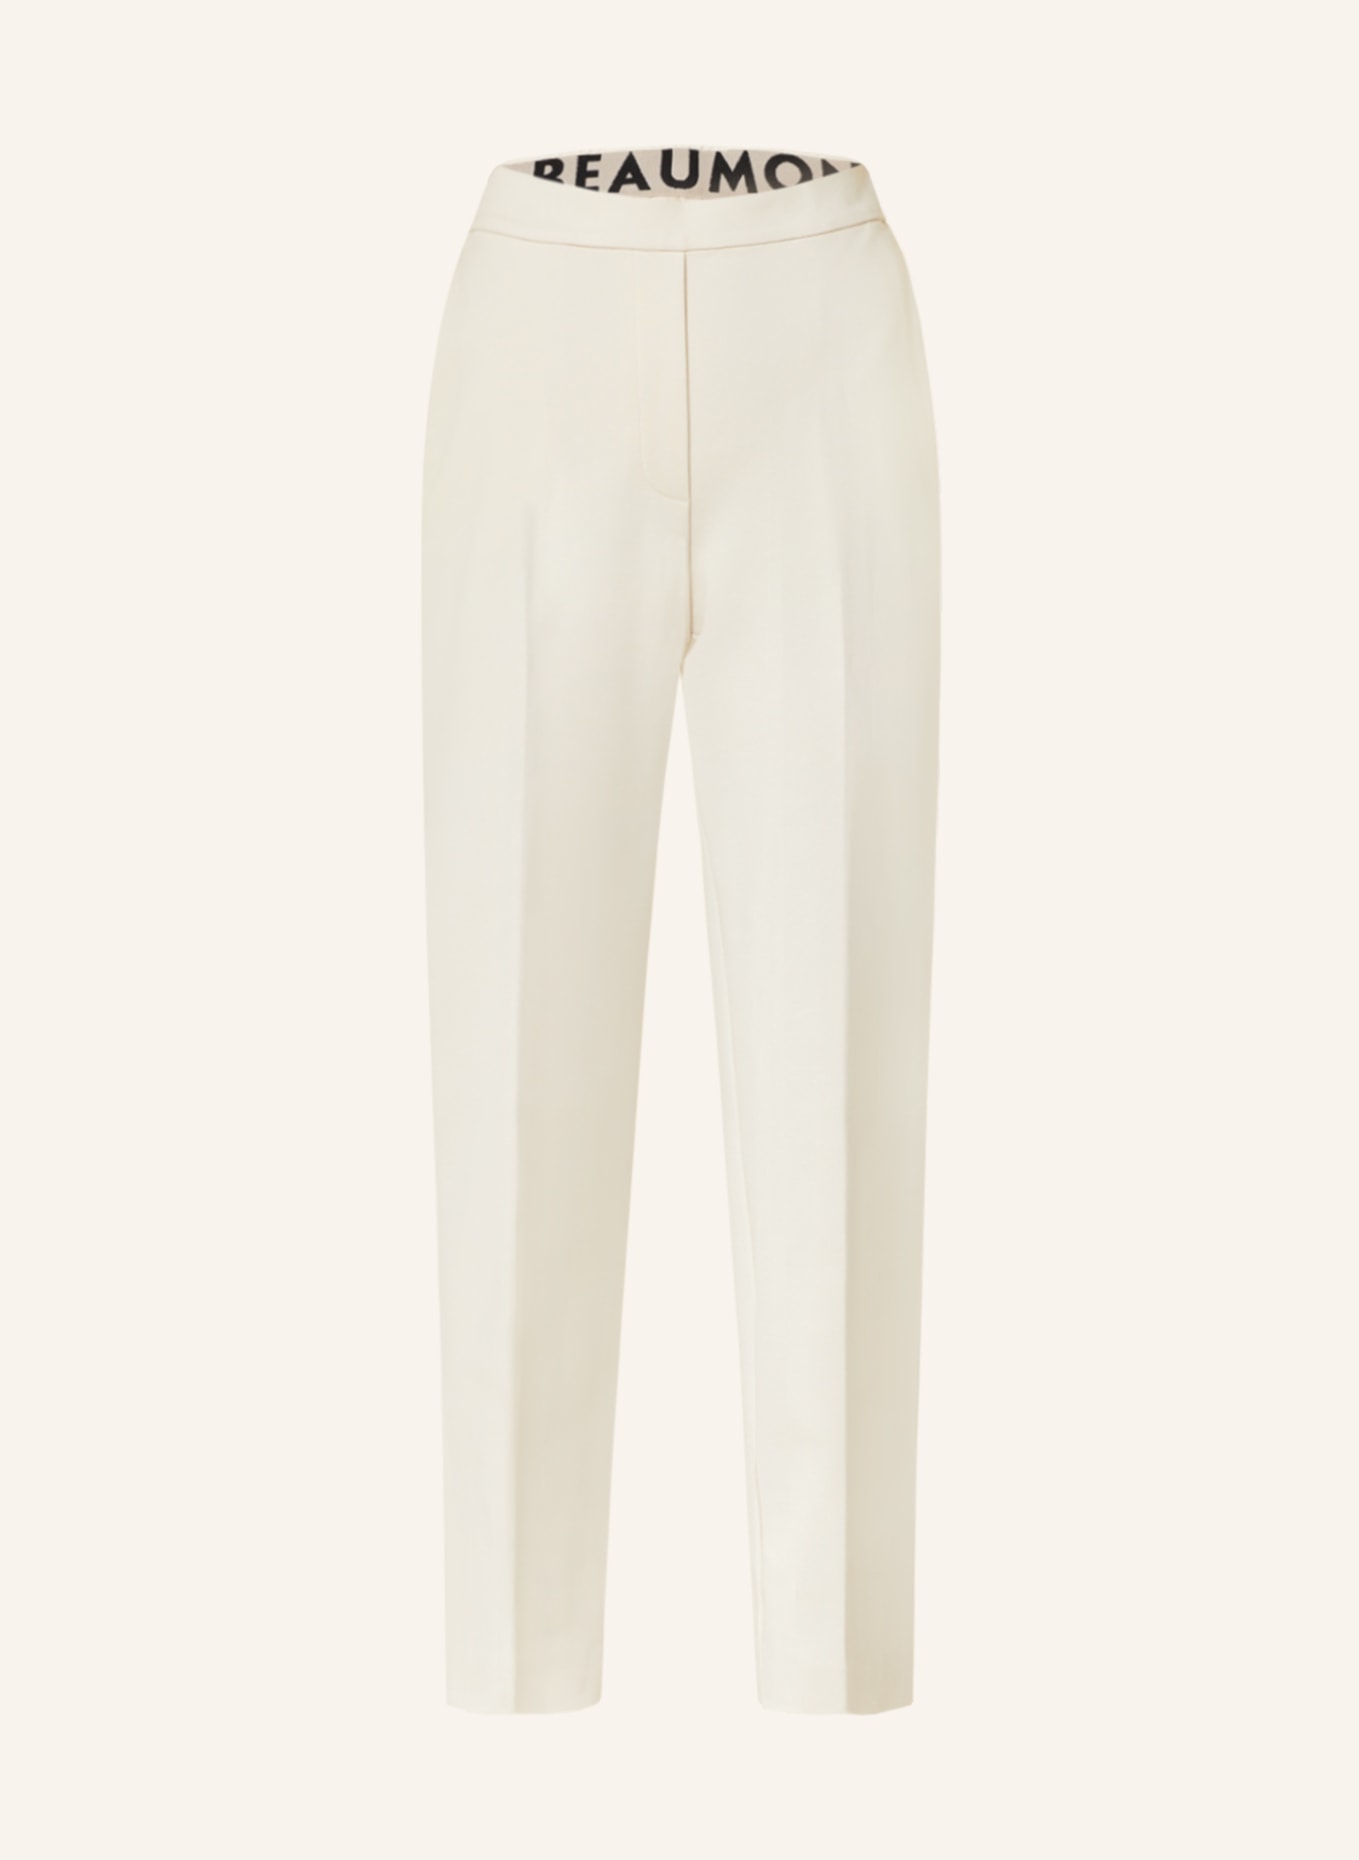 BEAUMONT Spodnie dżersejowe CHARLIE, Kolor: KREMOWY (Obrazek 1)